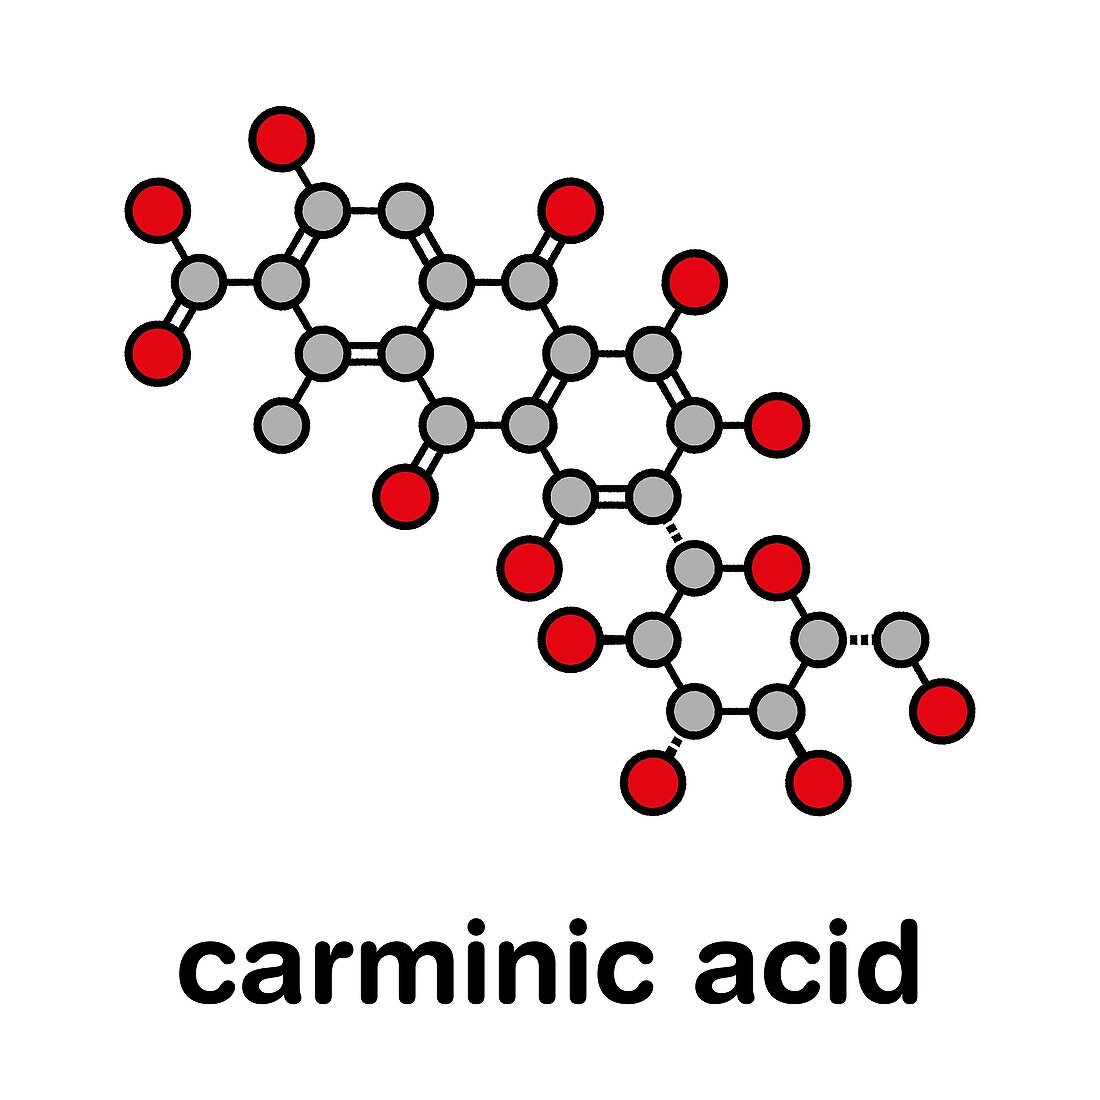 Carminic acid pigment molecule, illustration